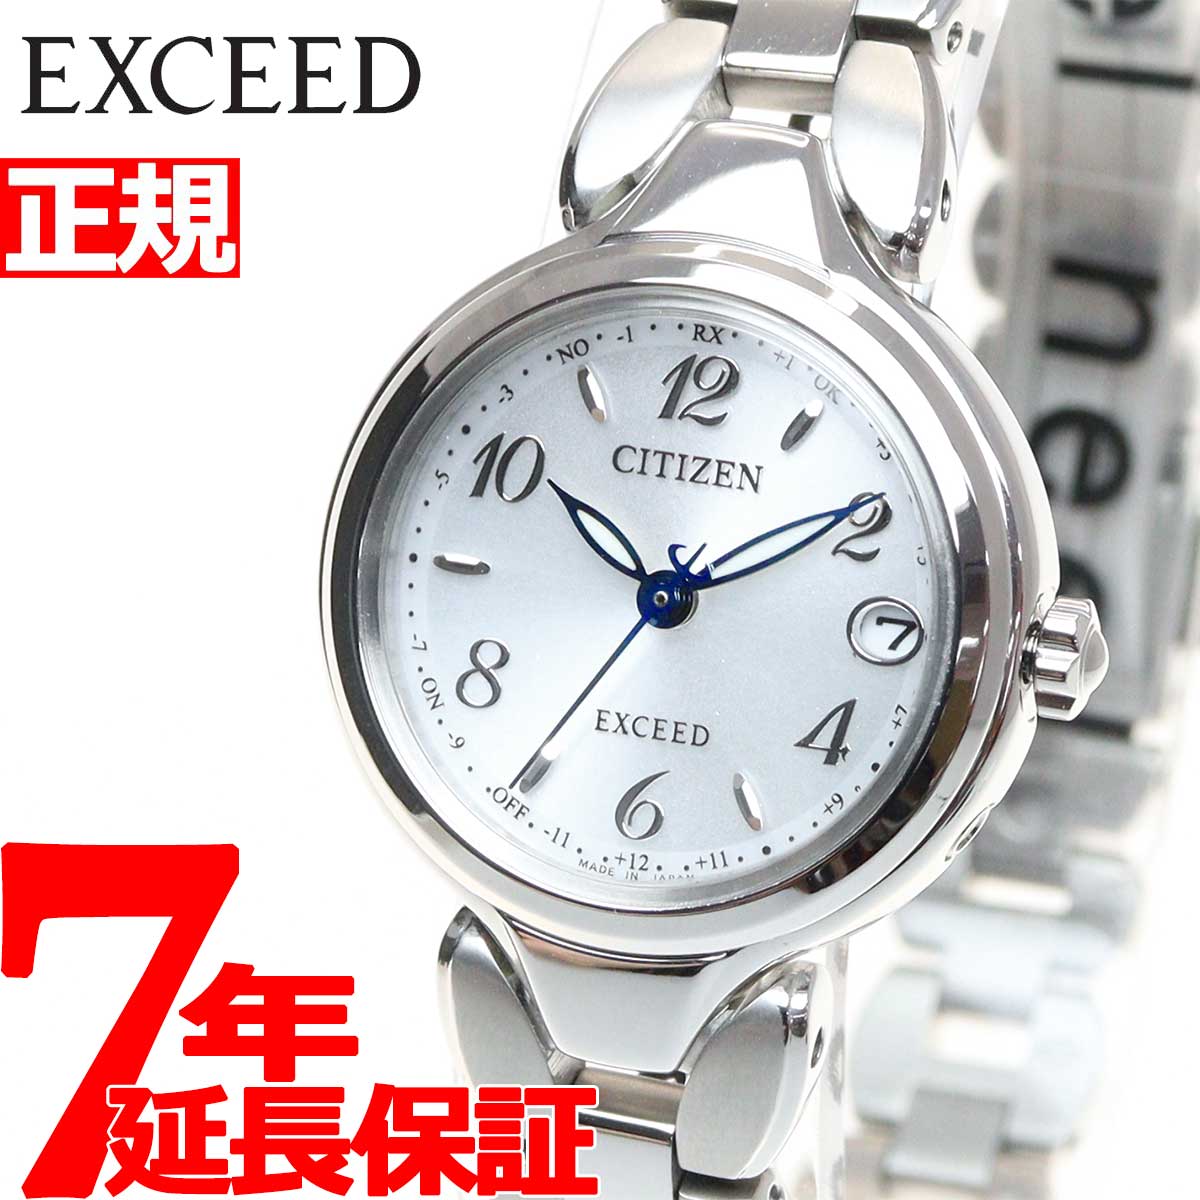 日本限定 155 CITIZEN エクシード時計 レディース腕時計 メンズ腕時計